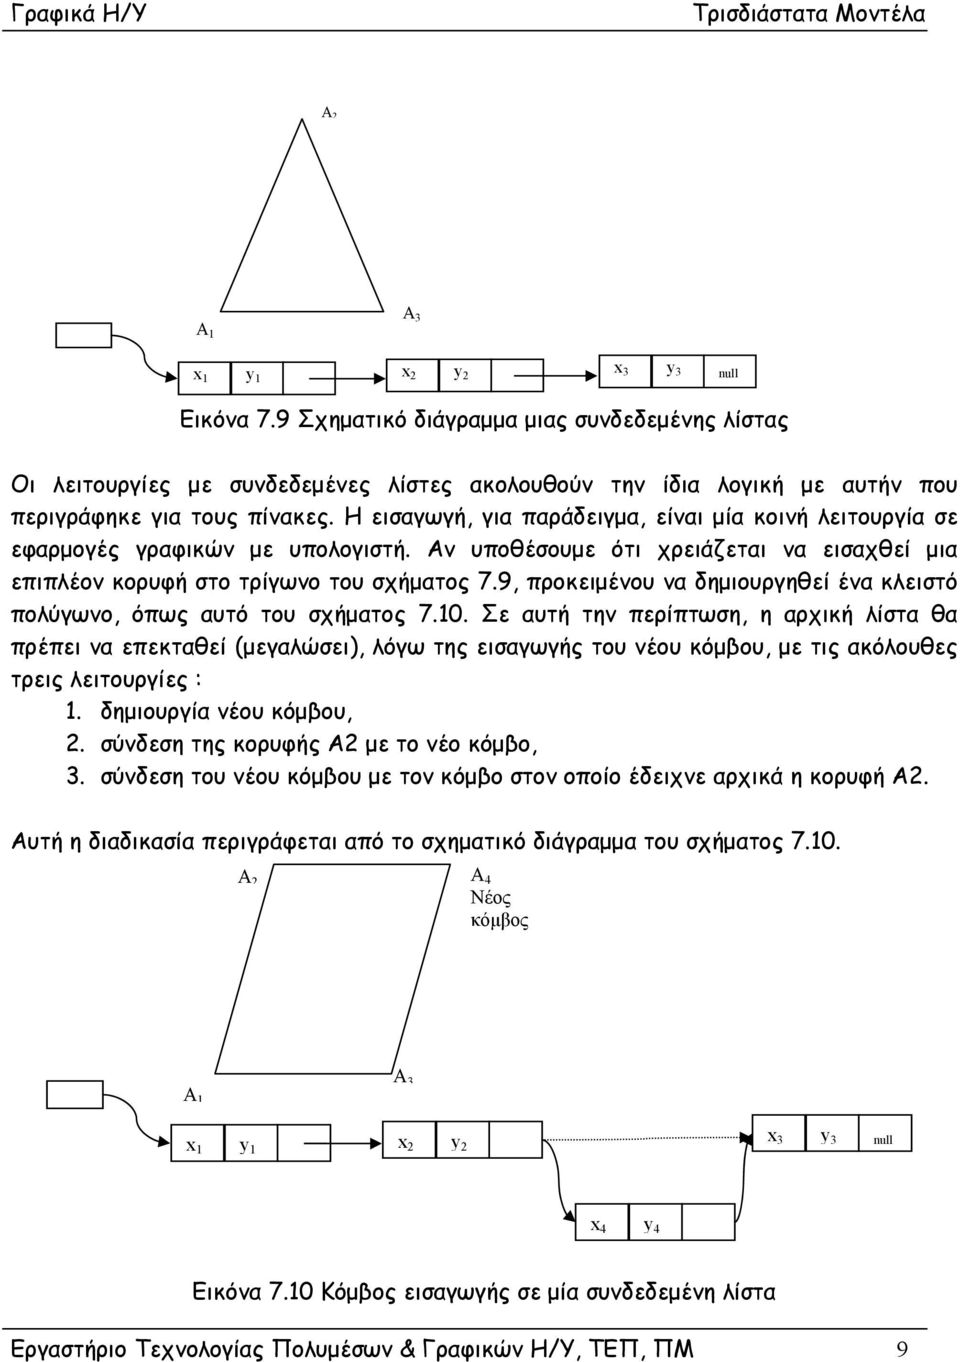 Η εισαγωγή, για παράδειγμα, είναι μία κοινή λειτουργία σε εφαρμογές γραφικών με υπολογιστή. Αν υποθέσουμε ότι χρειάζεται να εισαχθεί μια επιπλέον κορυφή στο τρίγωνο του σχήματος 7.